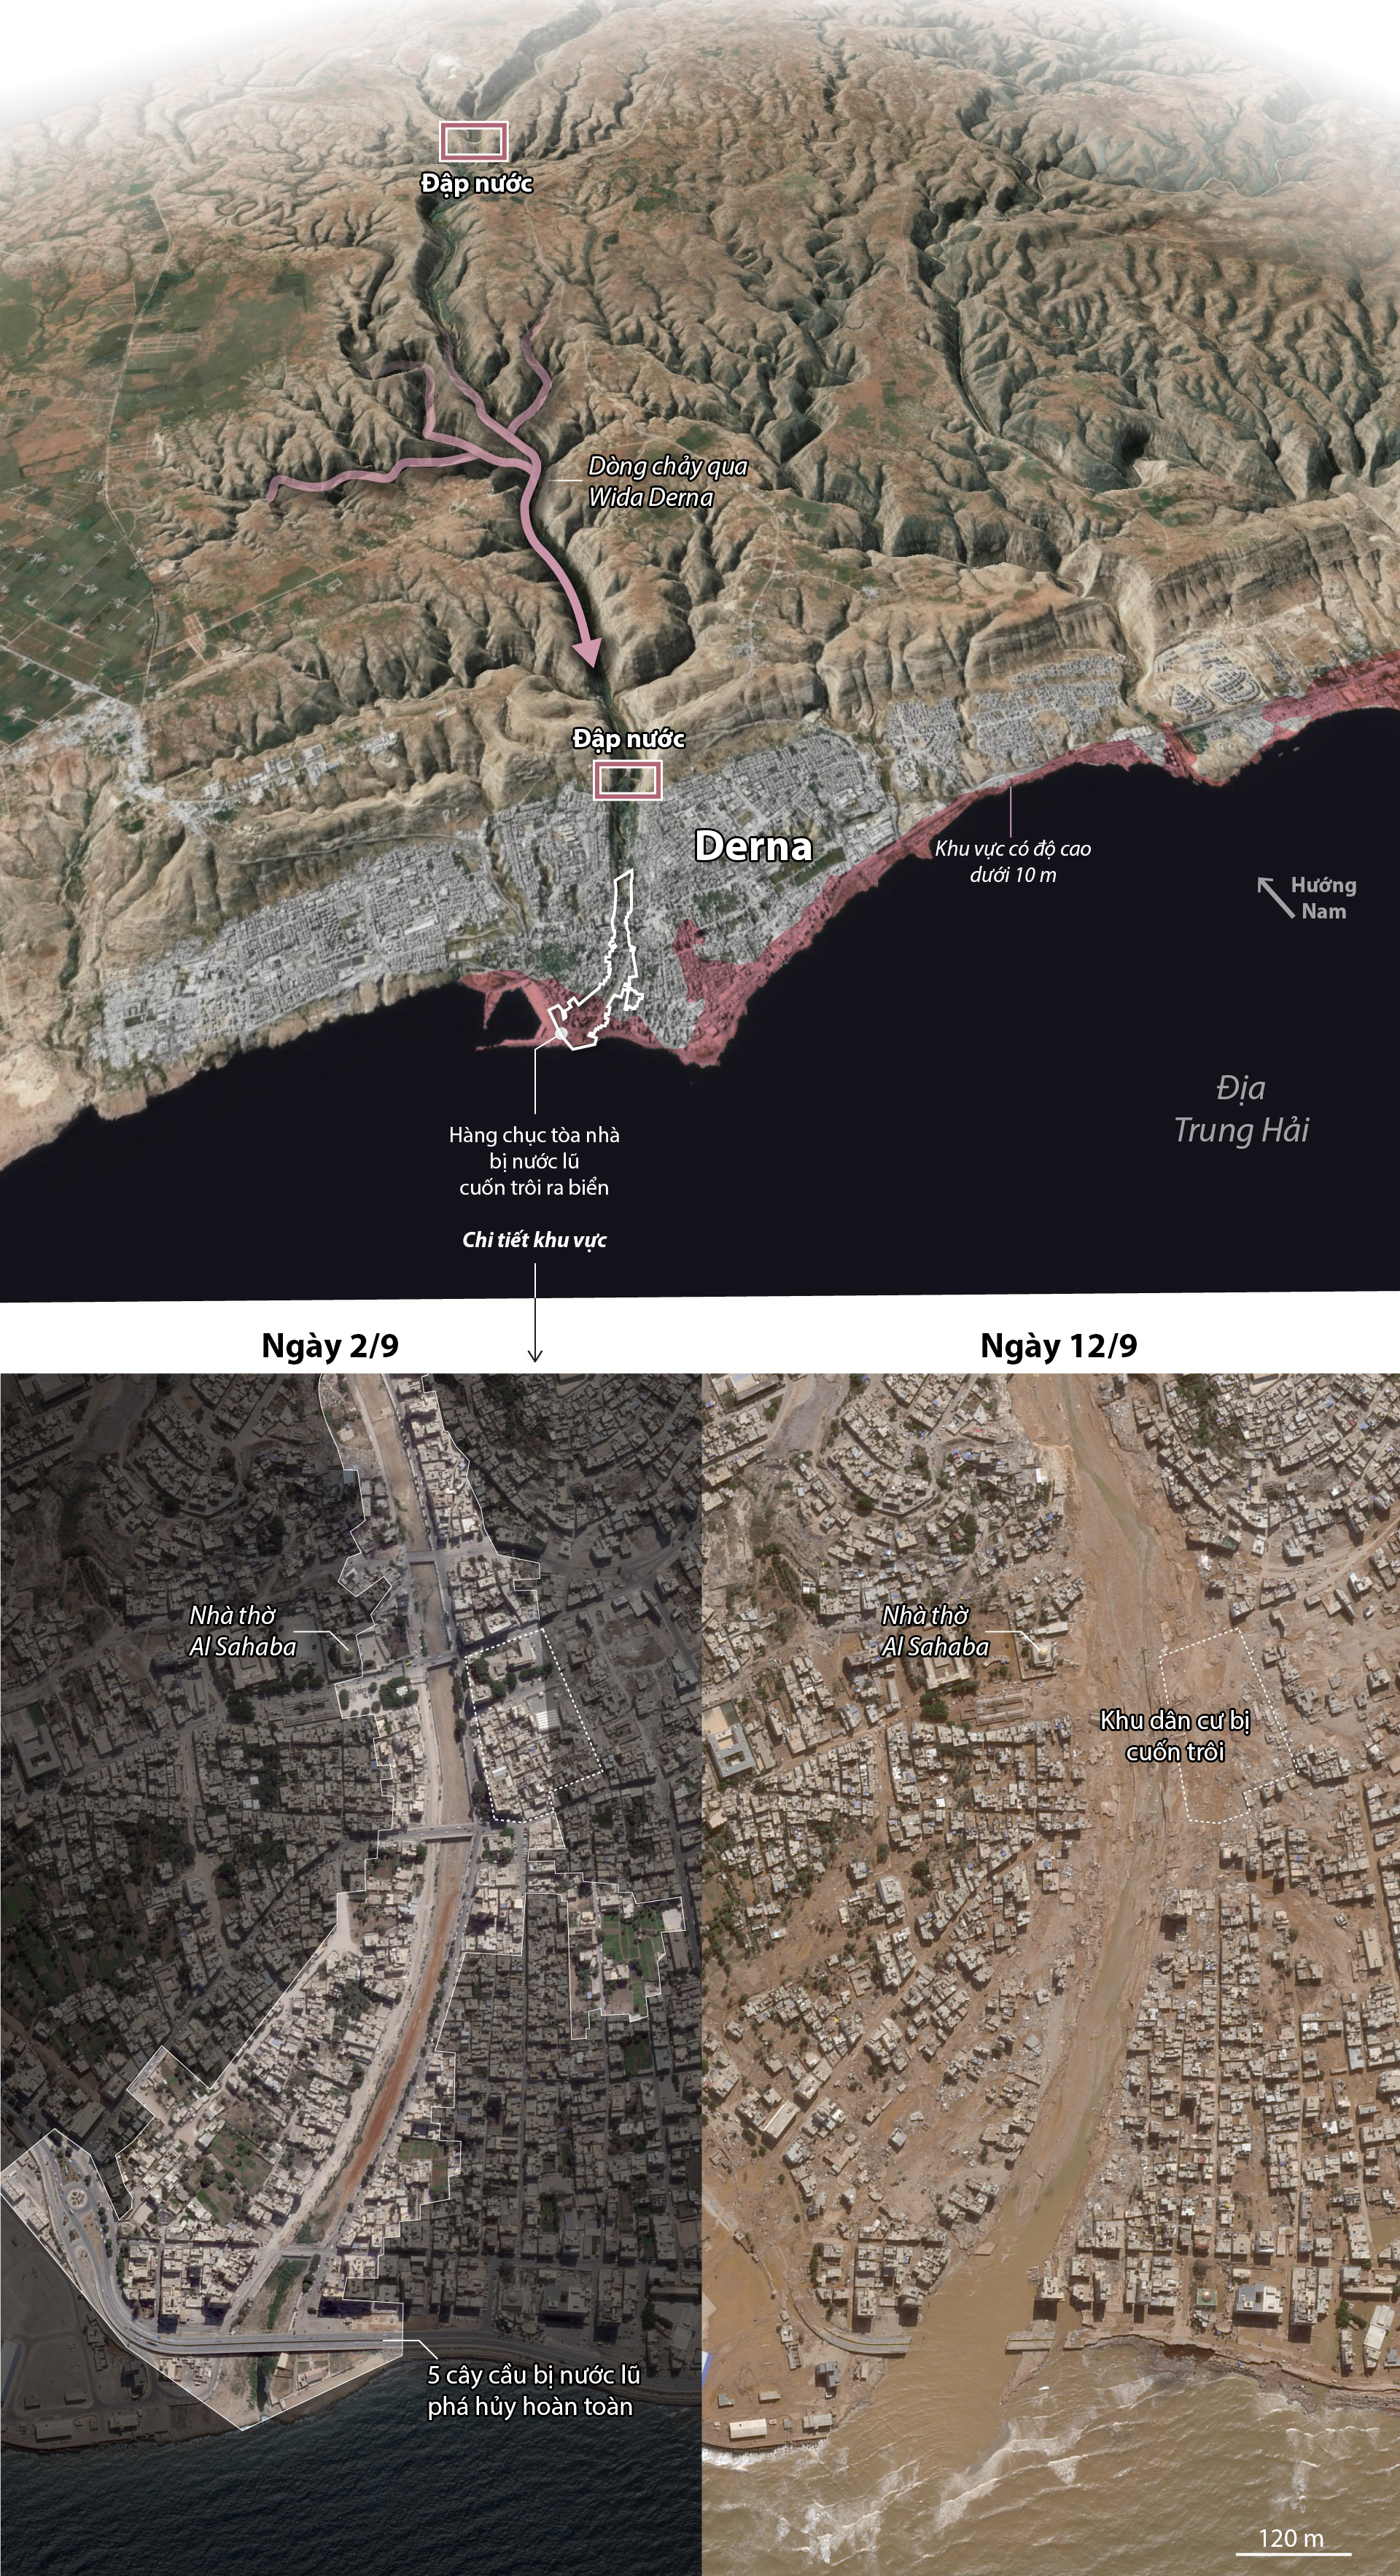 Vị trí hai đập nước bị vỡ, khiến thành phố Derna chịu thiệt hại nặng nề. Đồ họa: WP